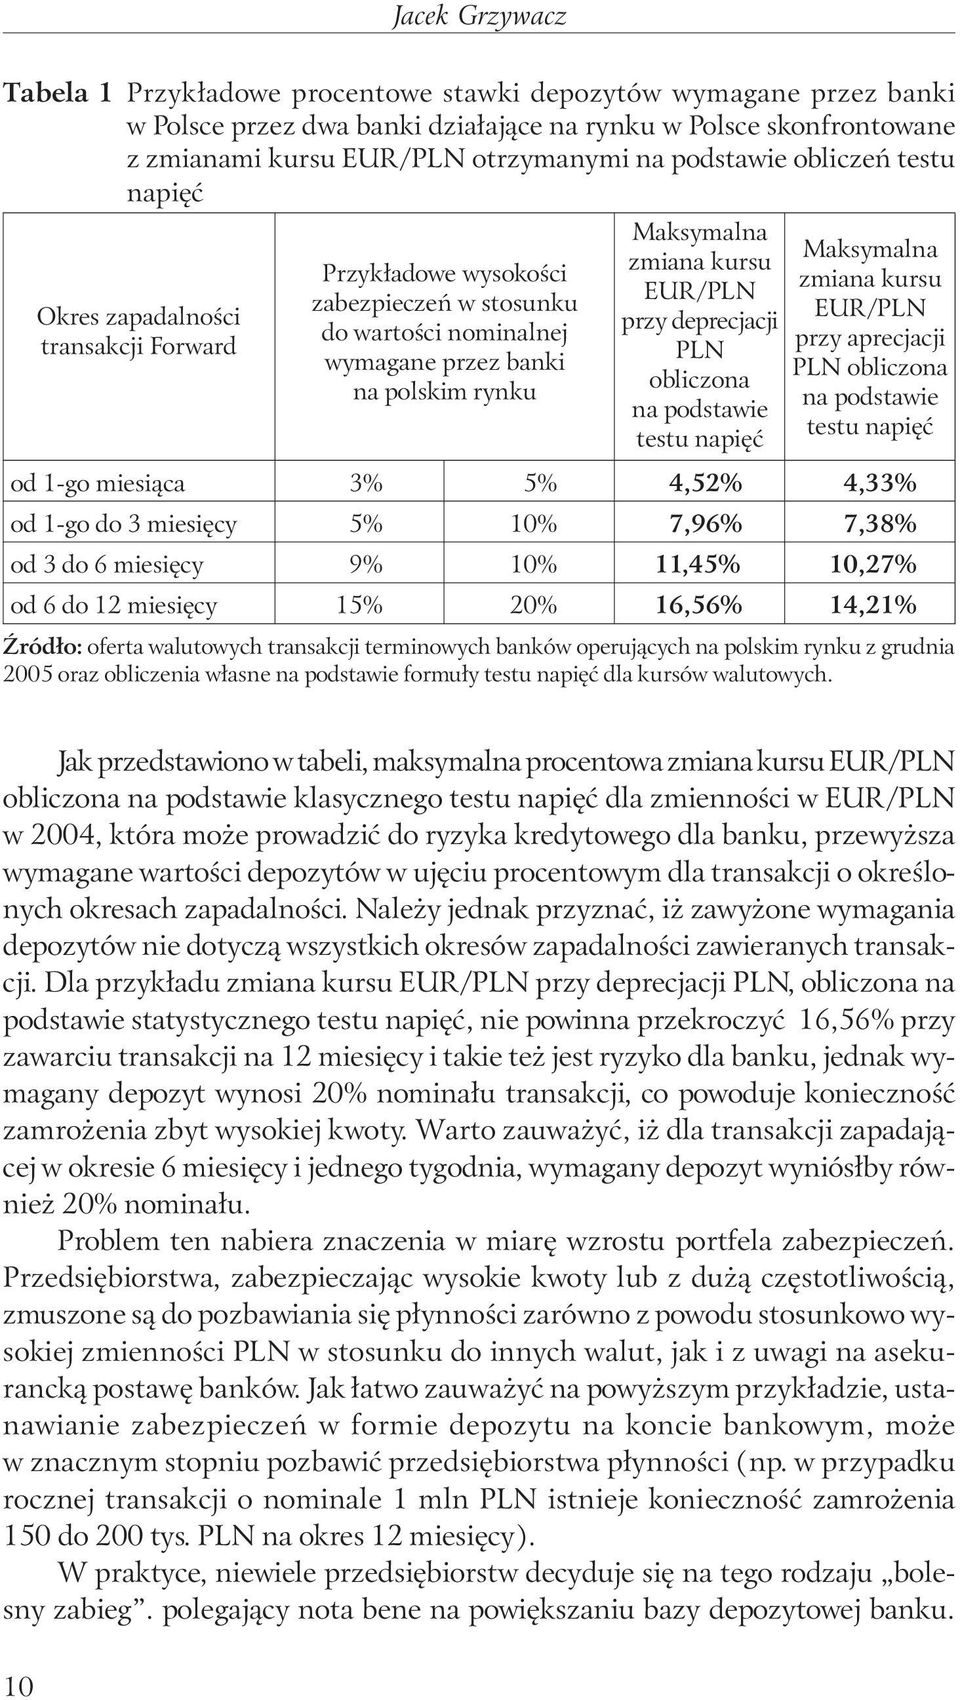 kursu EUR/PLN przy deprecjacji PLN obliczona na podstawie testu napięć Maksymalna zmiana kursu EUR/PLN przy aprecjacji PLN obliczona na podstawie testu napięć od 1-go miesiąca 3% 5% 4,52% 4,33% od